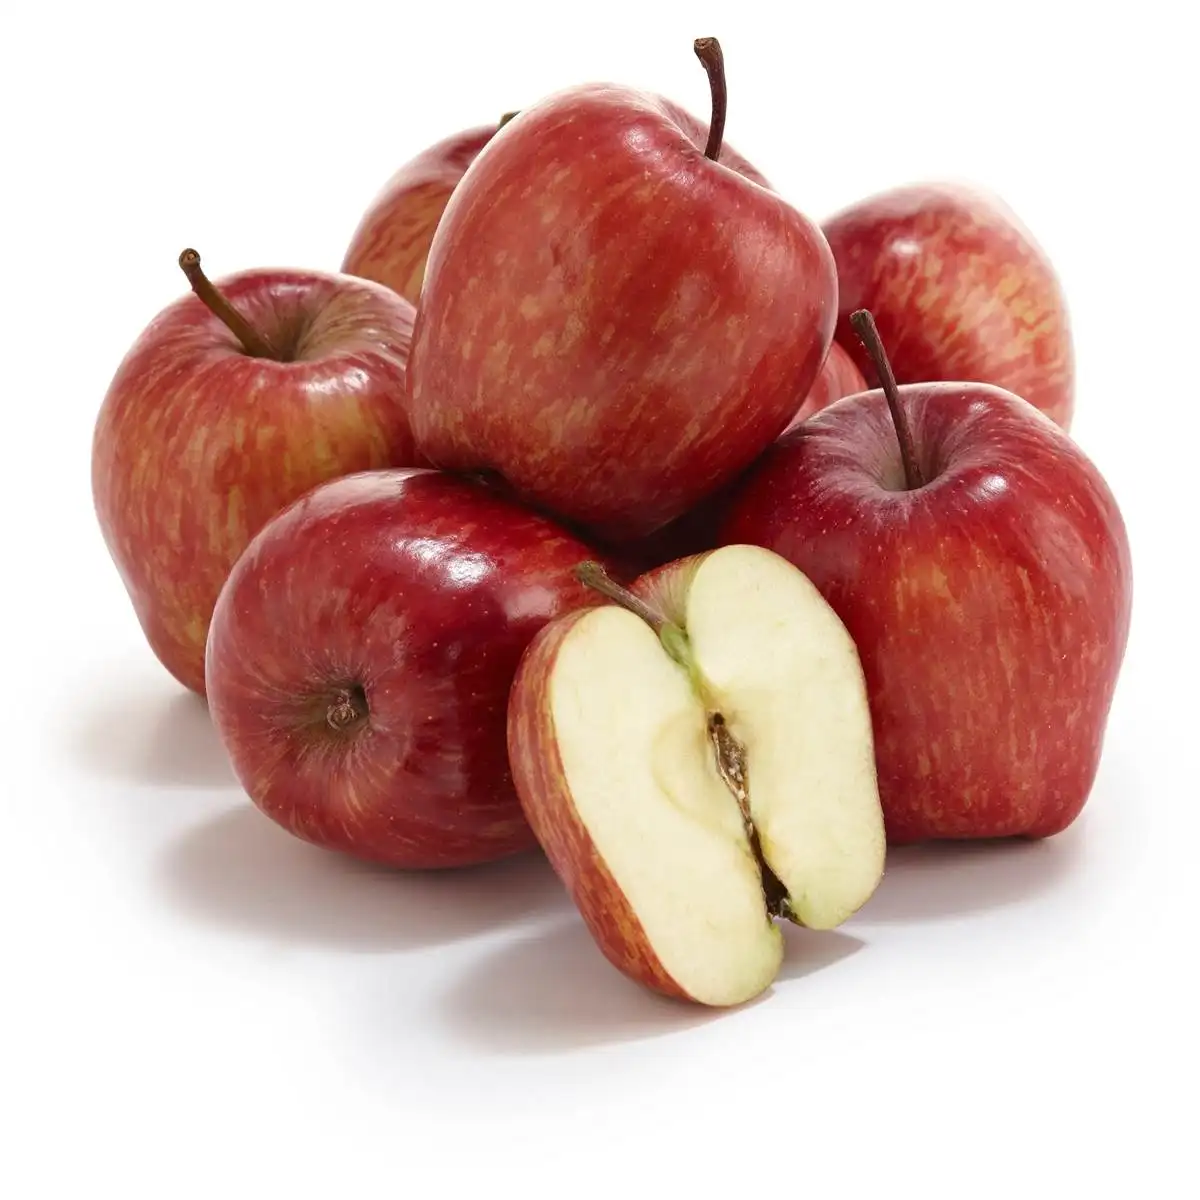 Nuovo dolce dolce royal gala mela fresca fuji e stella rossa mele e altri frutti freschi al prezzo all'ingrosso alla rinfusa per l'esportazione